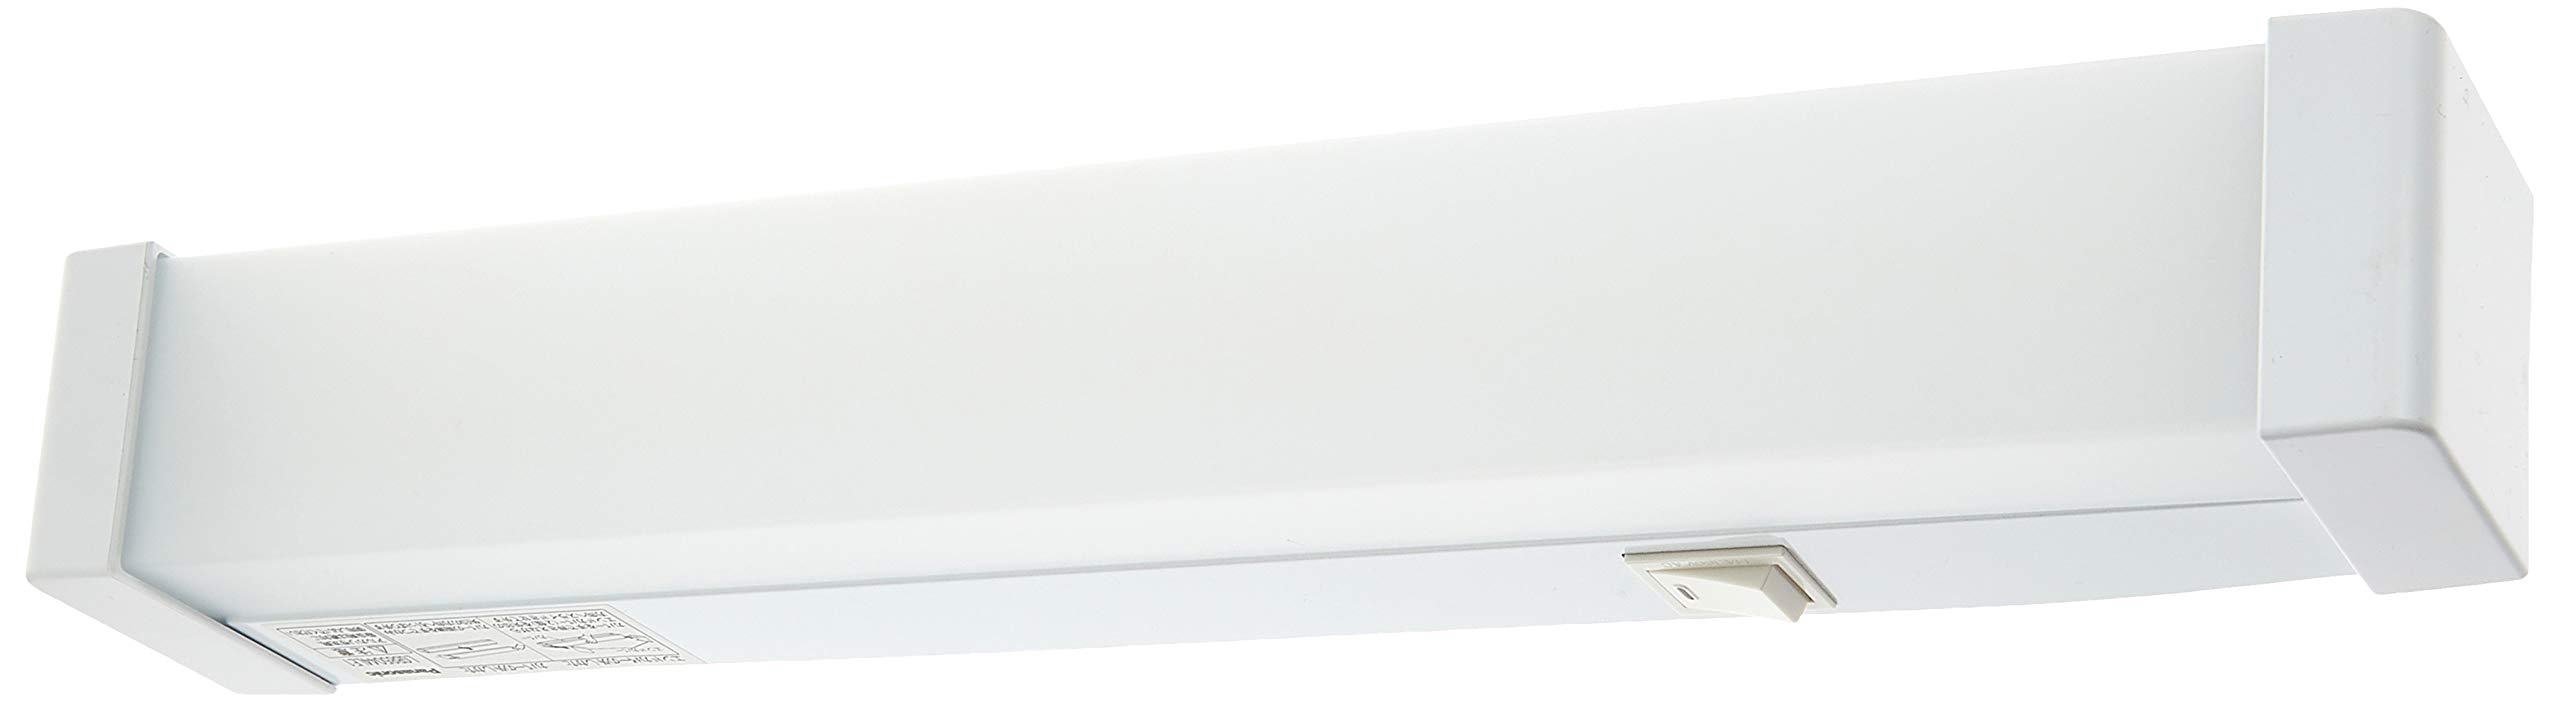 パナソニック(Panasonic) LED ブラケット 天井壁直付型 直管15形 昼白色 LGB85044LE1